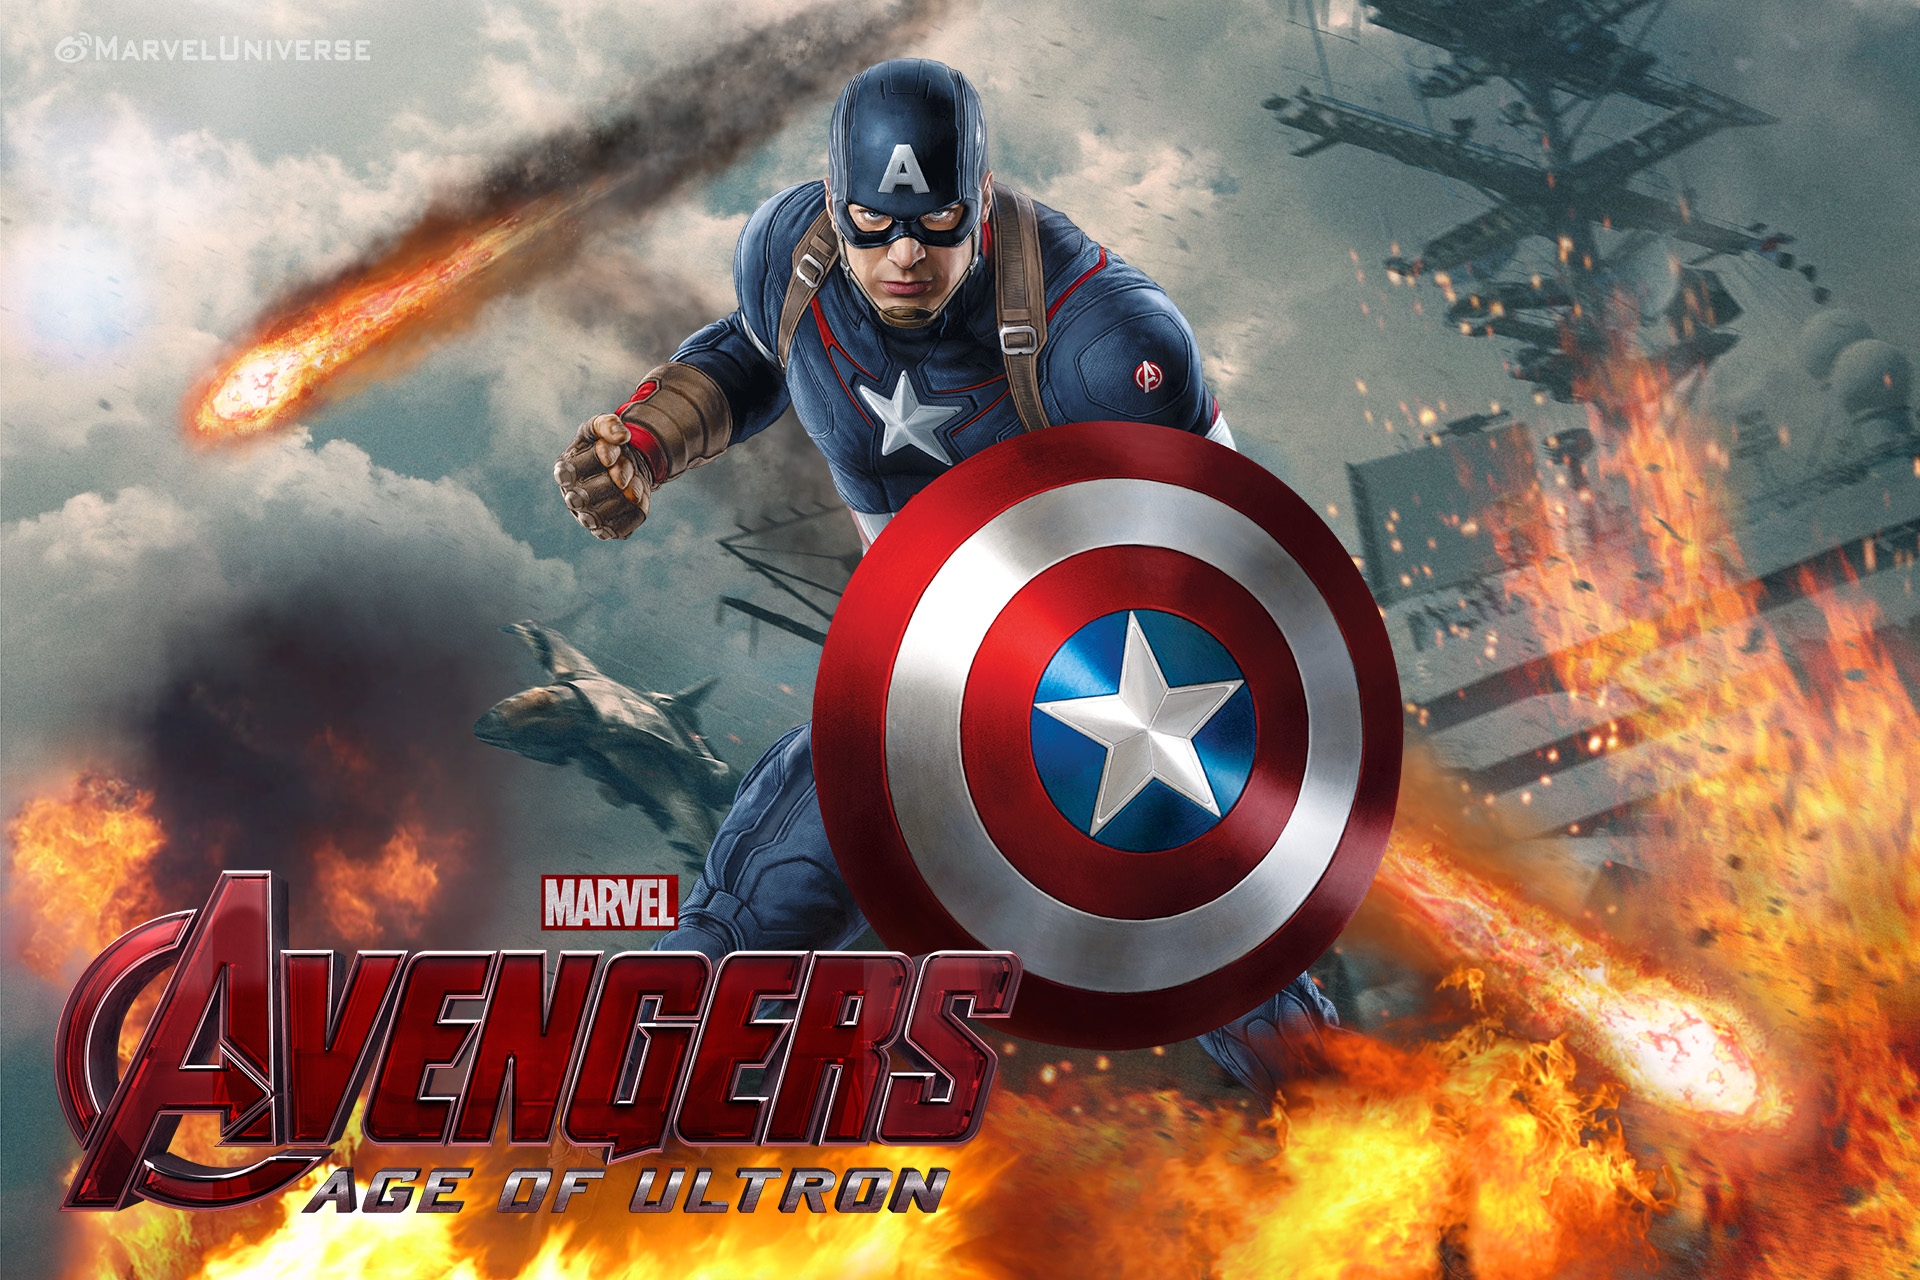 Captain America Avengers Wallpaper Images On Wallpaper - Capitan America Wallpaper Avengers - HD Wallpaper 